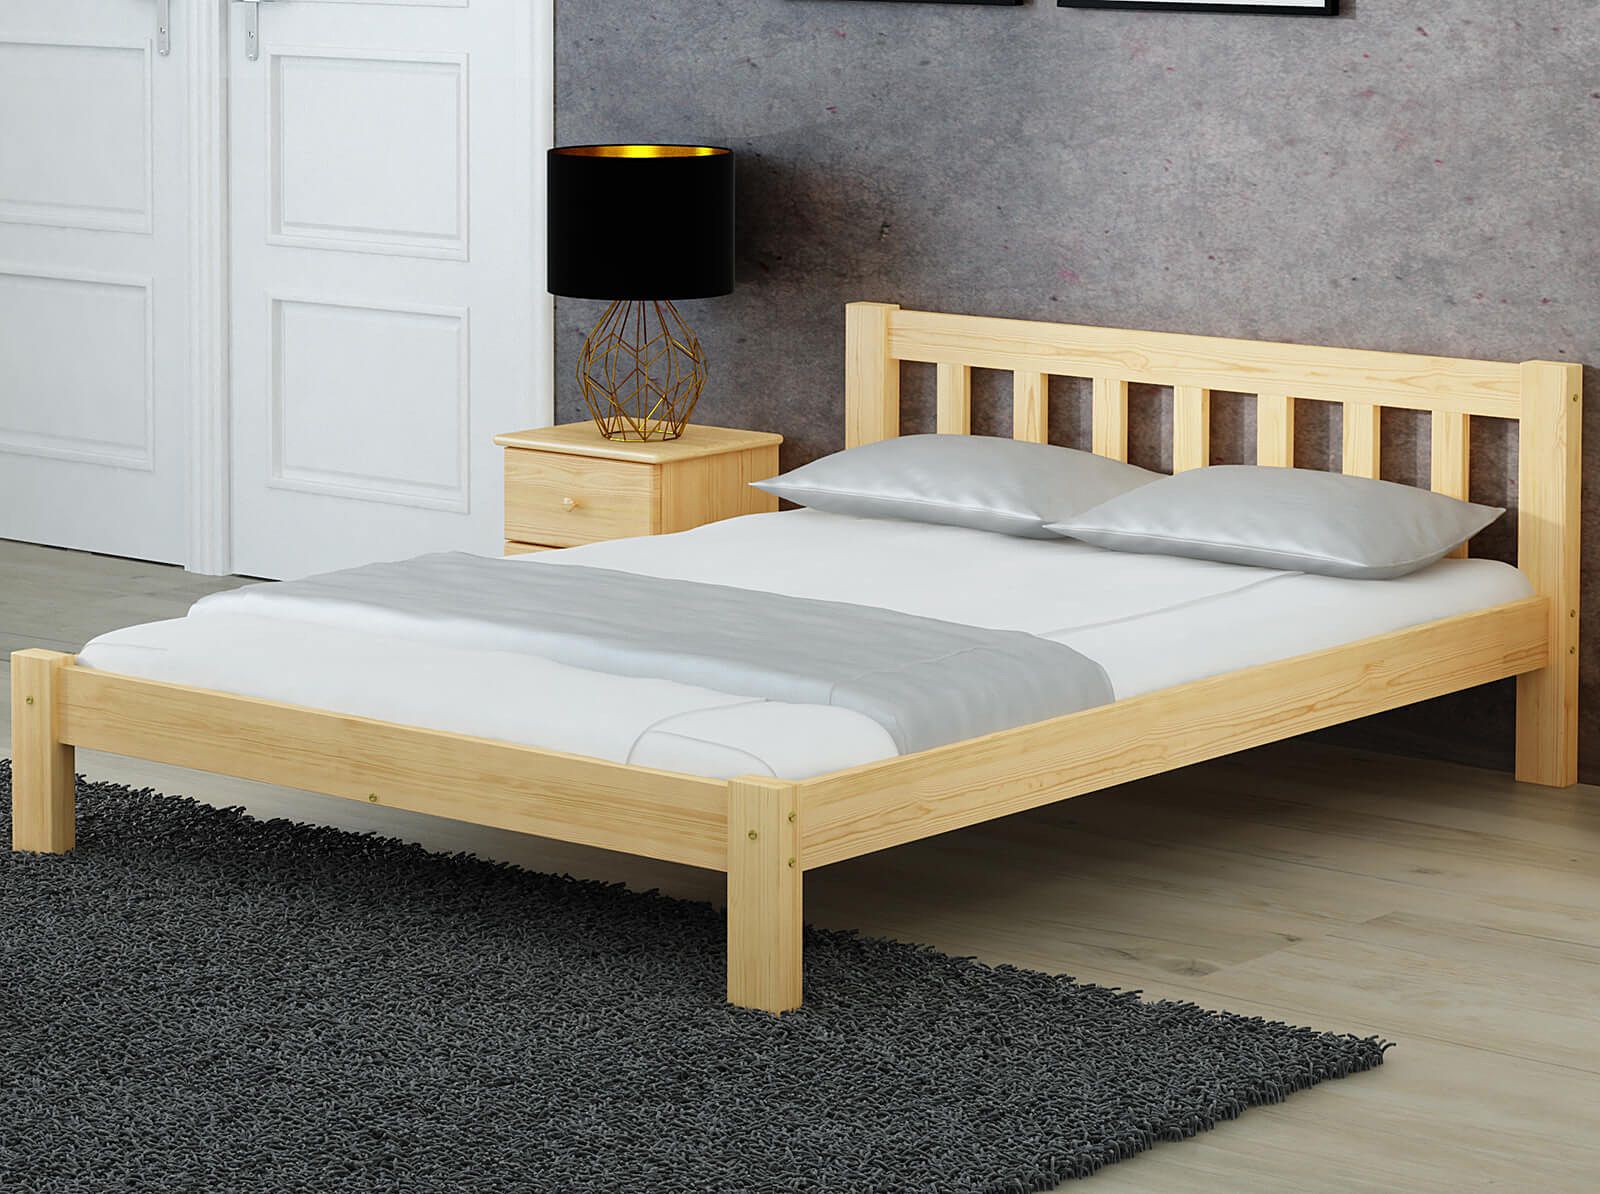 Кровать Коринф кровать соня вариант 4 с защитой по центру выкатные ящики приобретаются отдельно лаванда